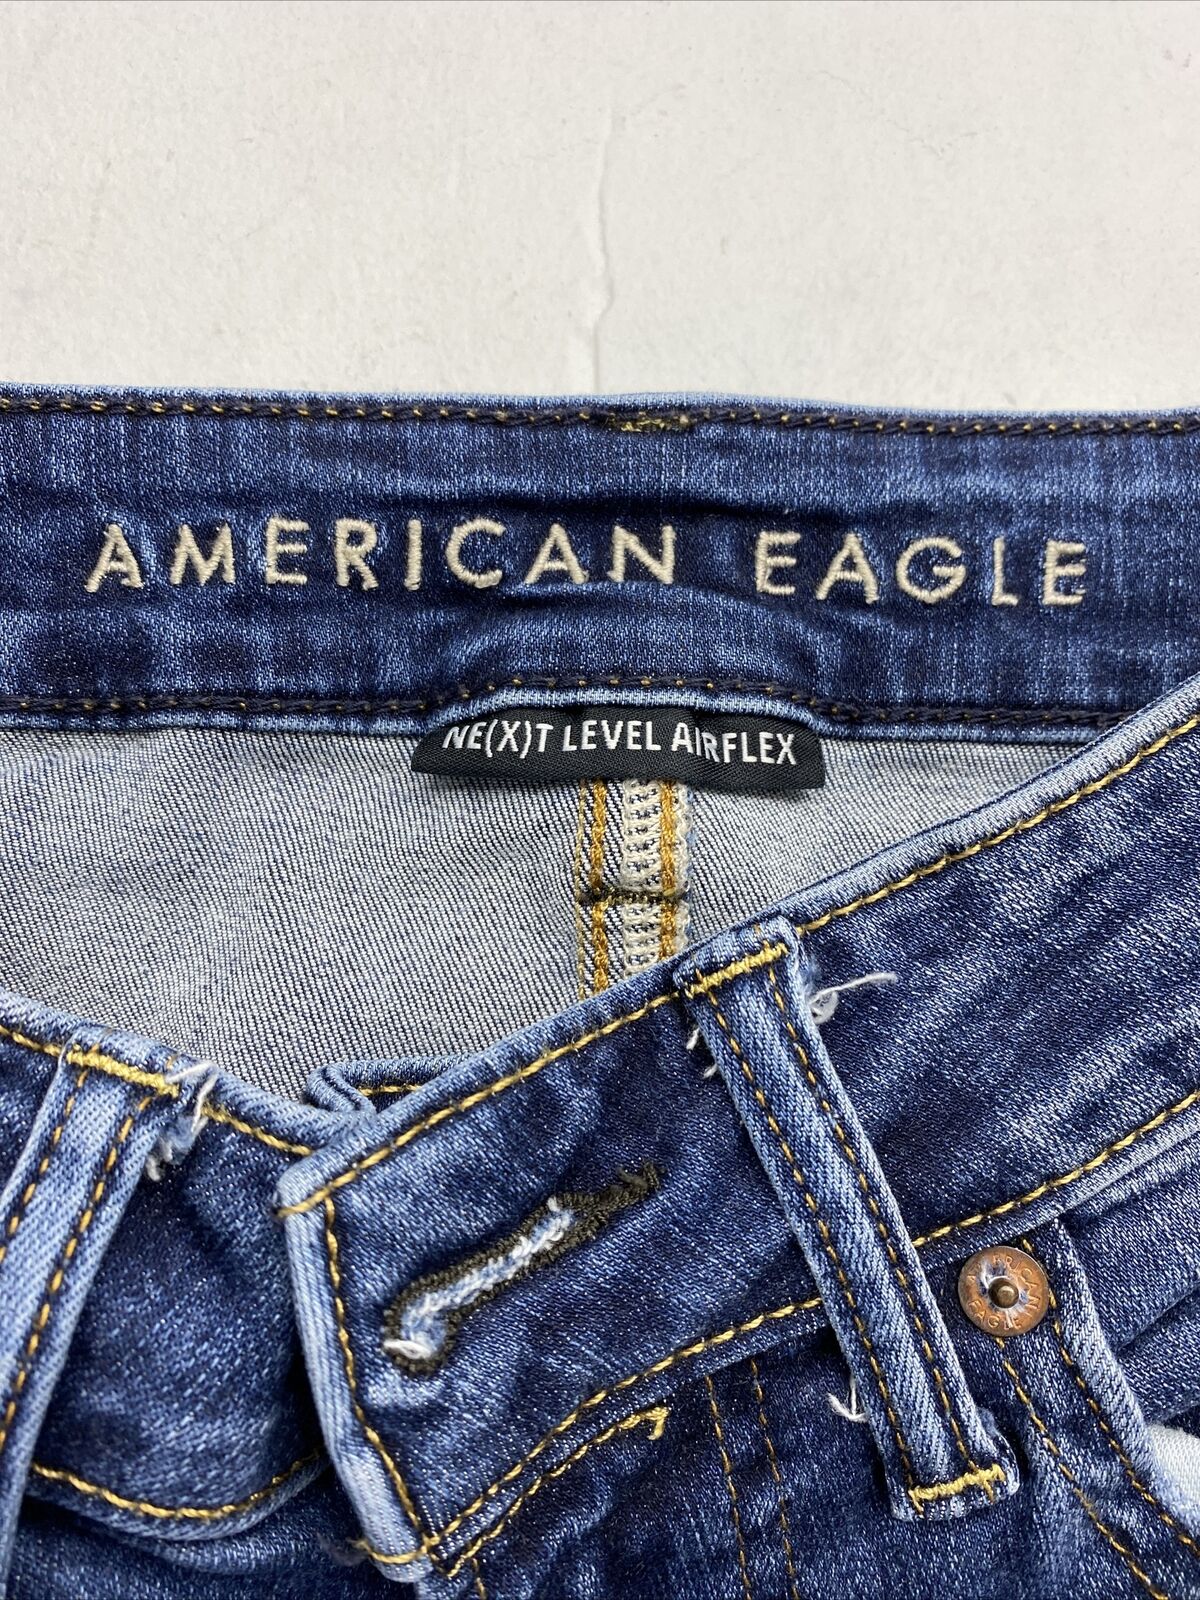 American Eagle Ne(x)t Level Air Flex Slim Jeans Men's Size 28X28 Distr -  beyond exchange